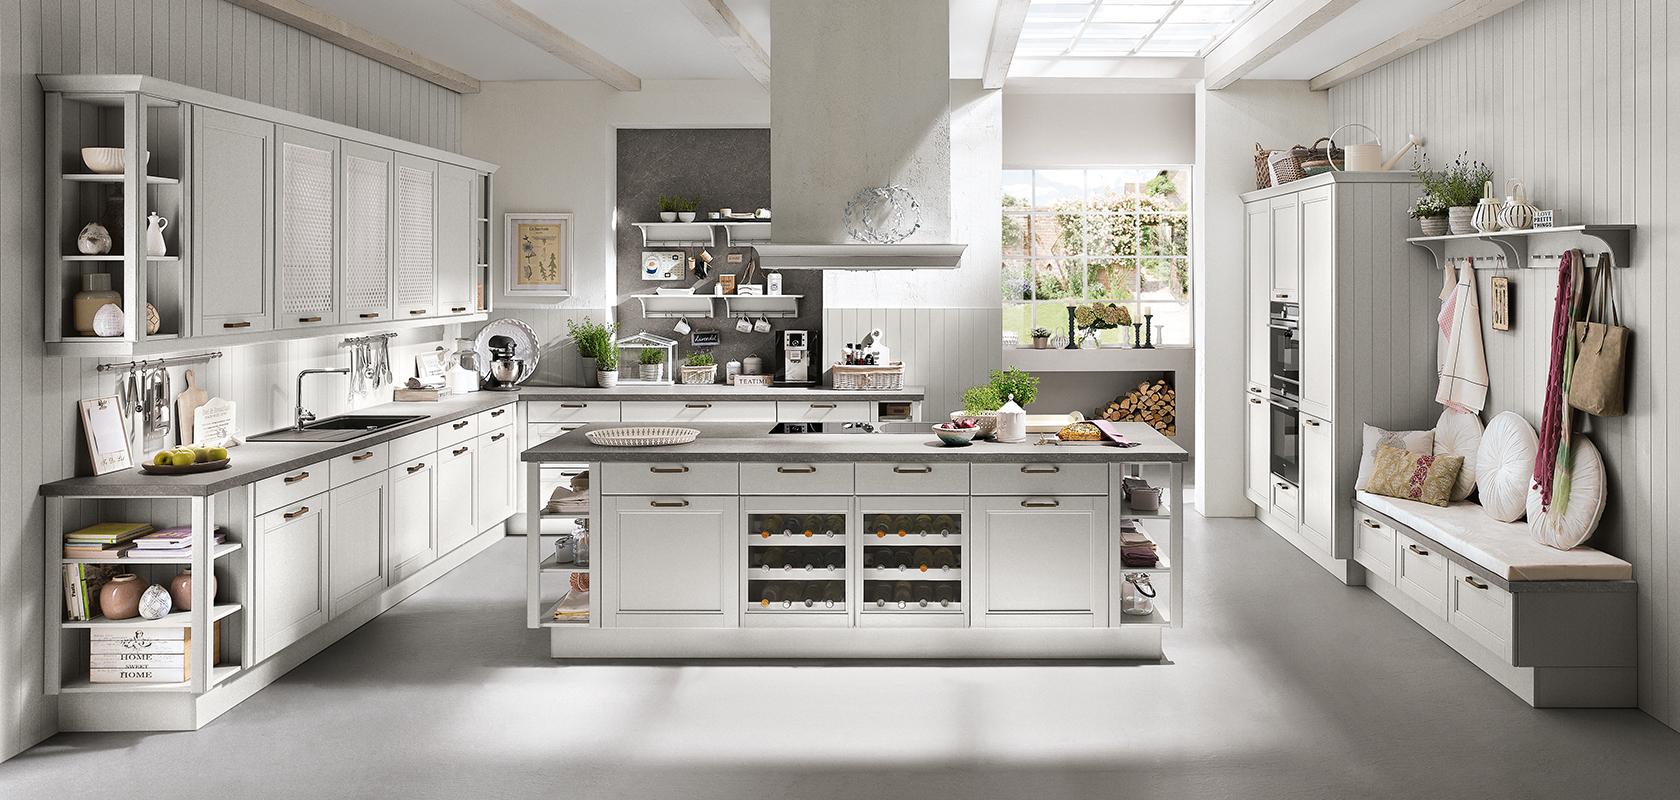 Una cocina brillante y moderna con gabinetes blancos, isla central y electrodomésticos de acero inoxidable, mostrando un diseño elegante y limpio.